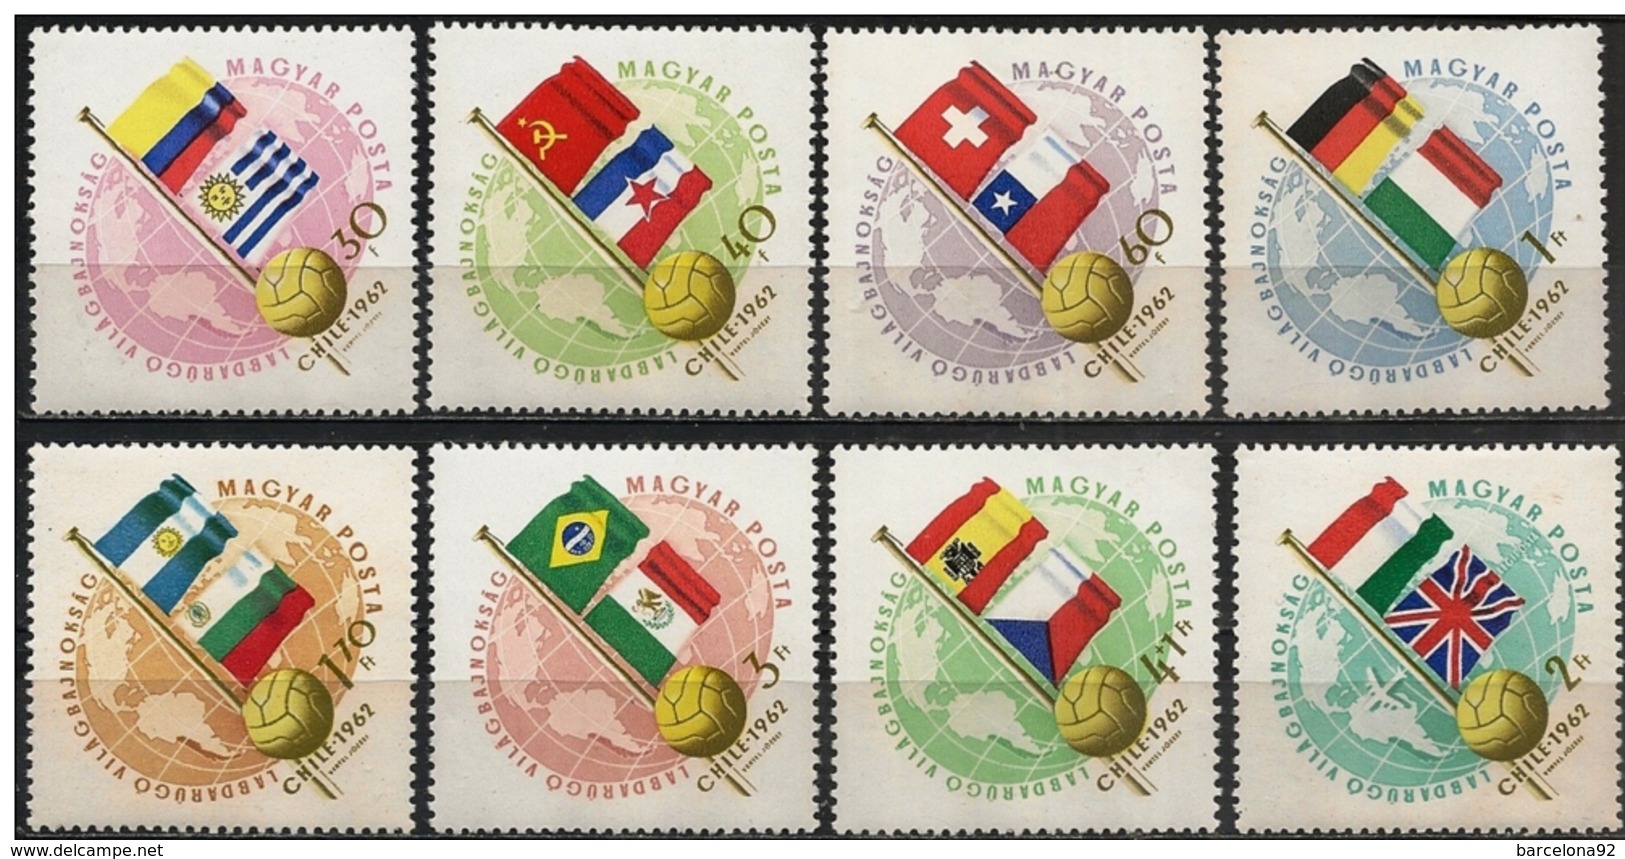 Hungria - Mundiales Chile 1962 - 1505/11 + A/231 - Nuevo - 1962 – Chile